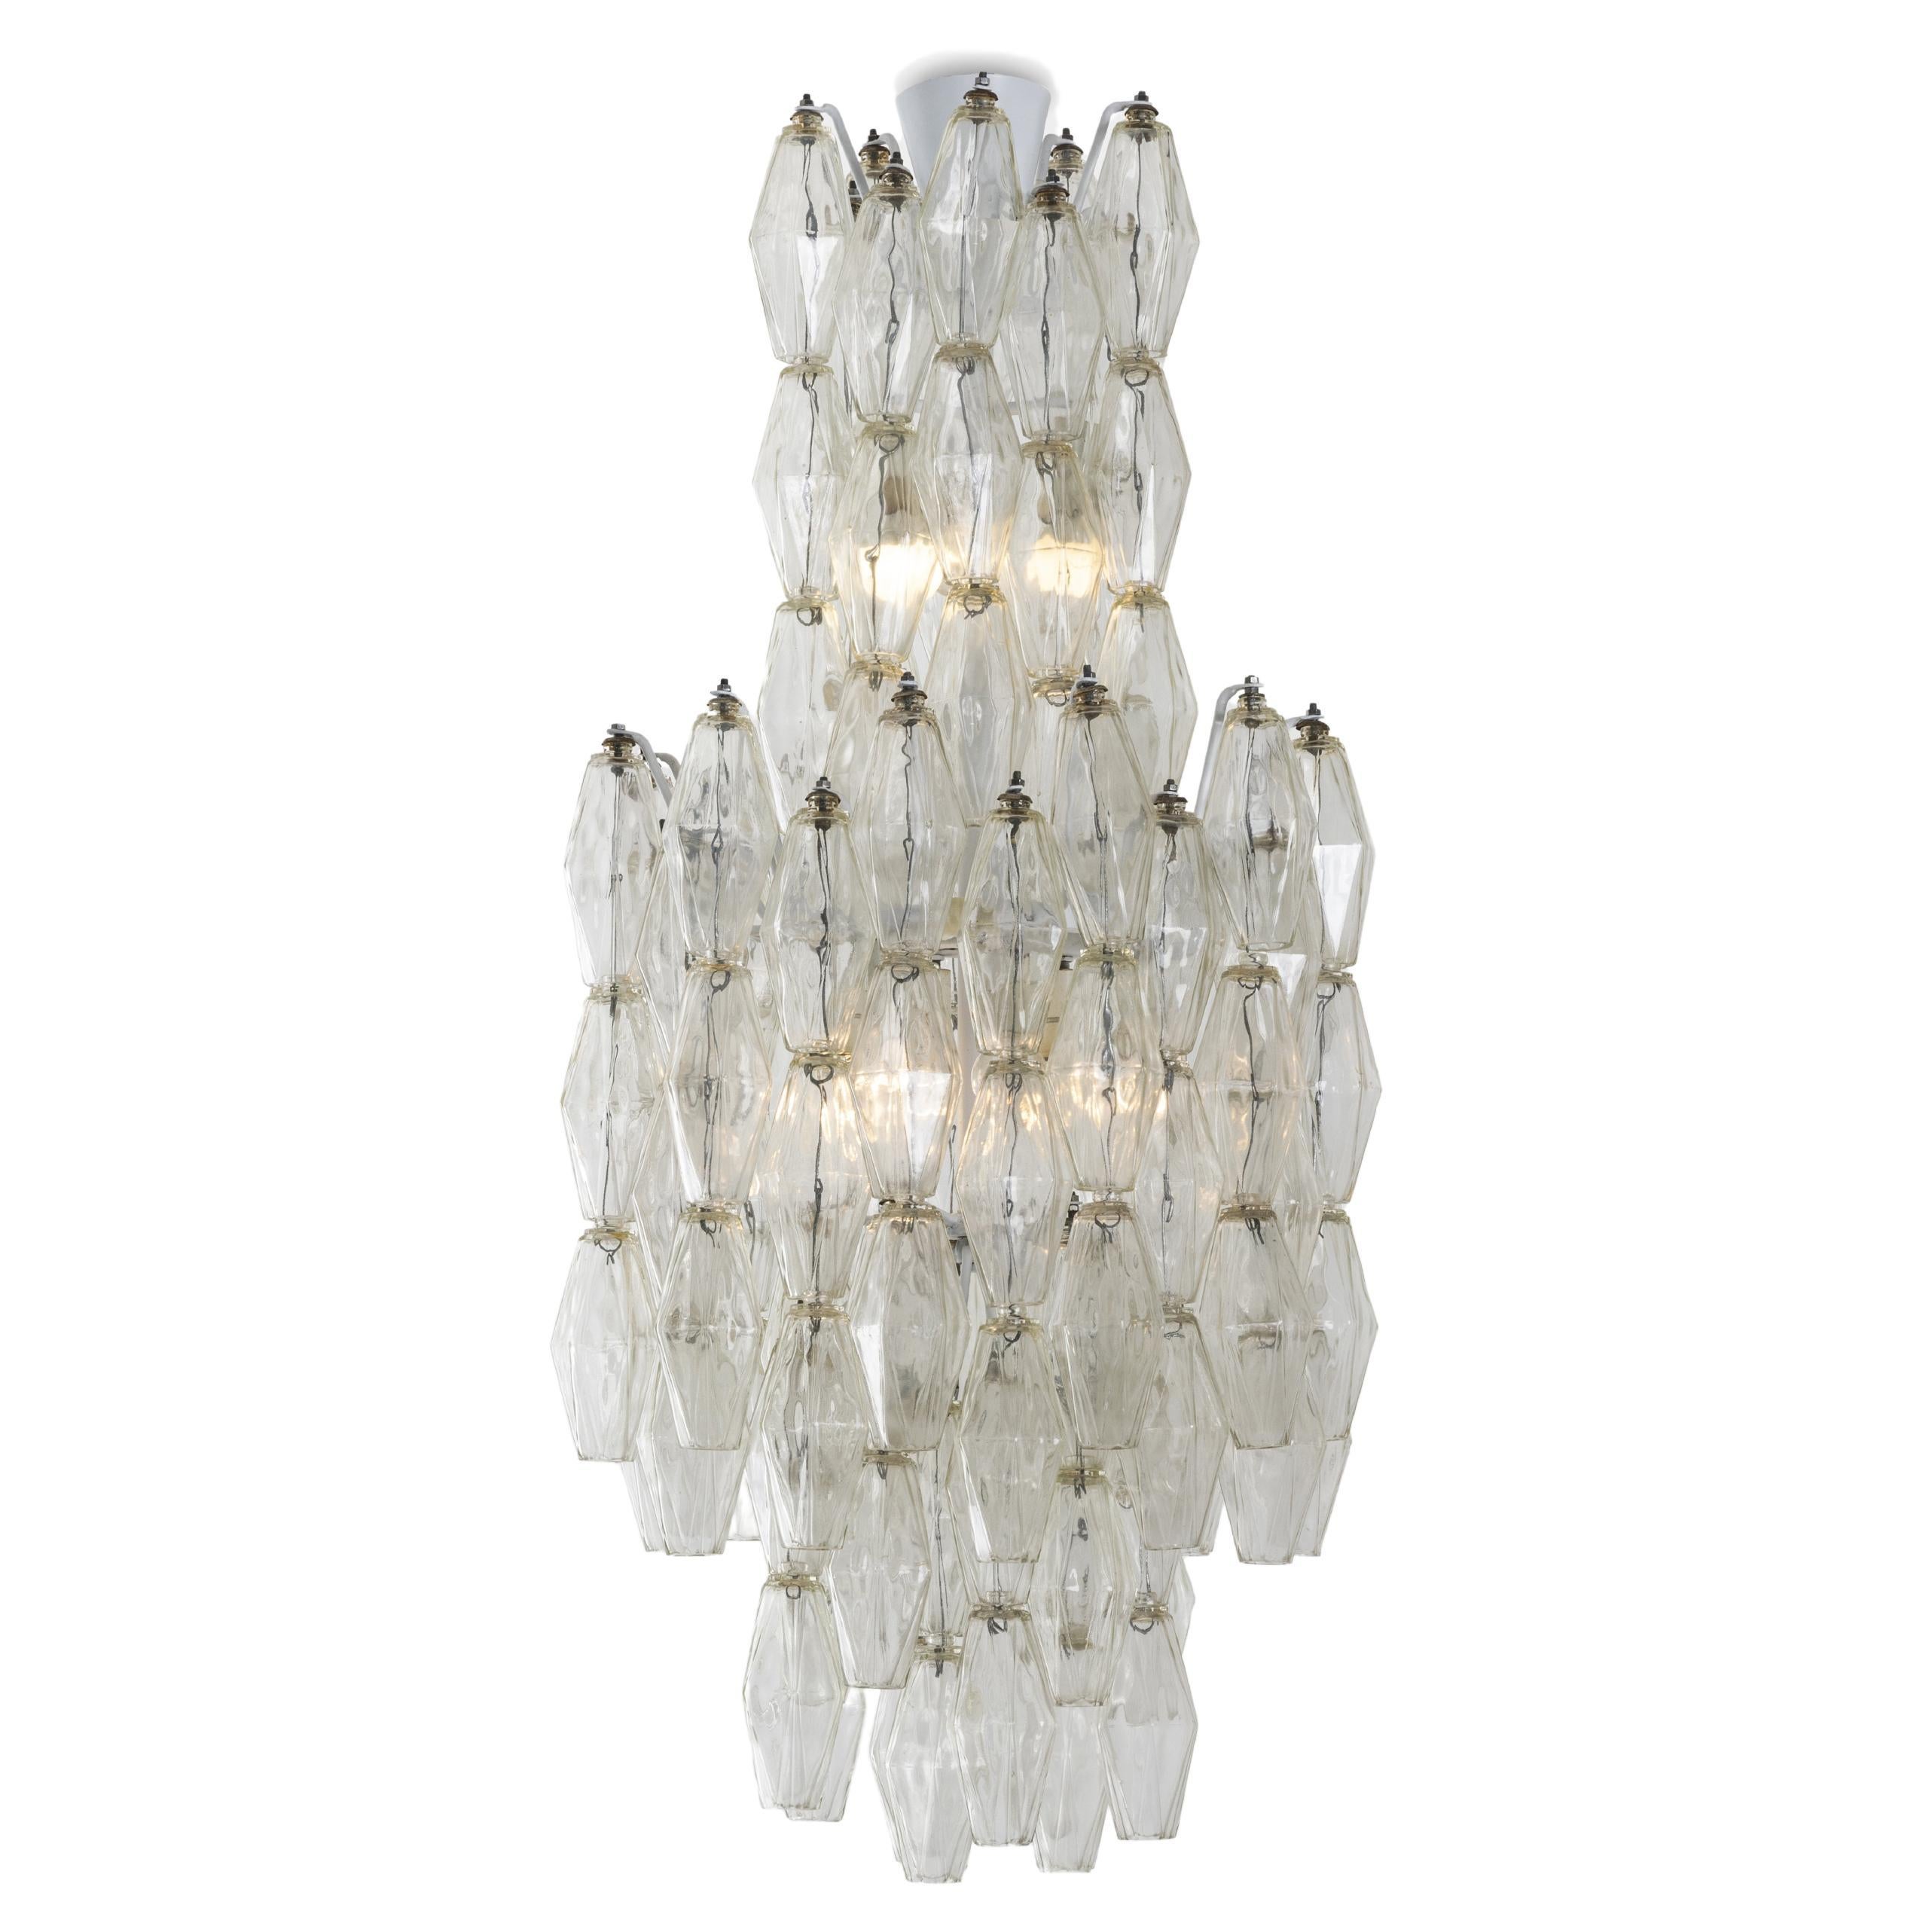 Carlo Scarpa for Venini Poliedri Murano glass chandelier, Italian Design 1960s For Sale